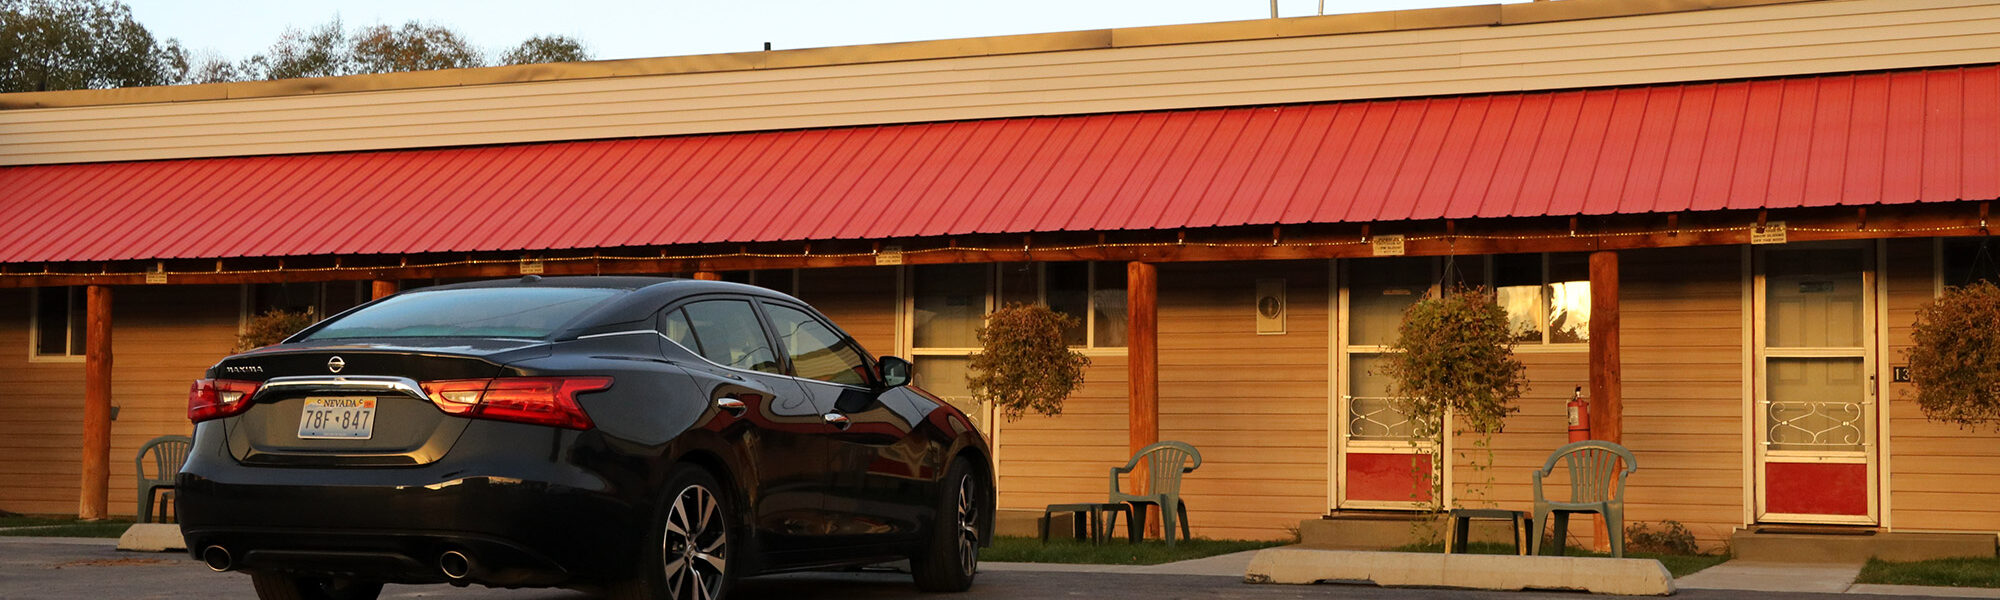 Amerika dag 1: Onze auto parkeren voor het motel Snider's Rustic Inn in Thayne